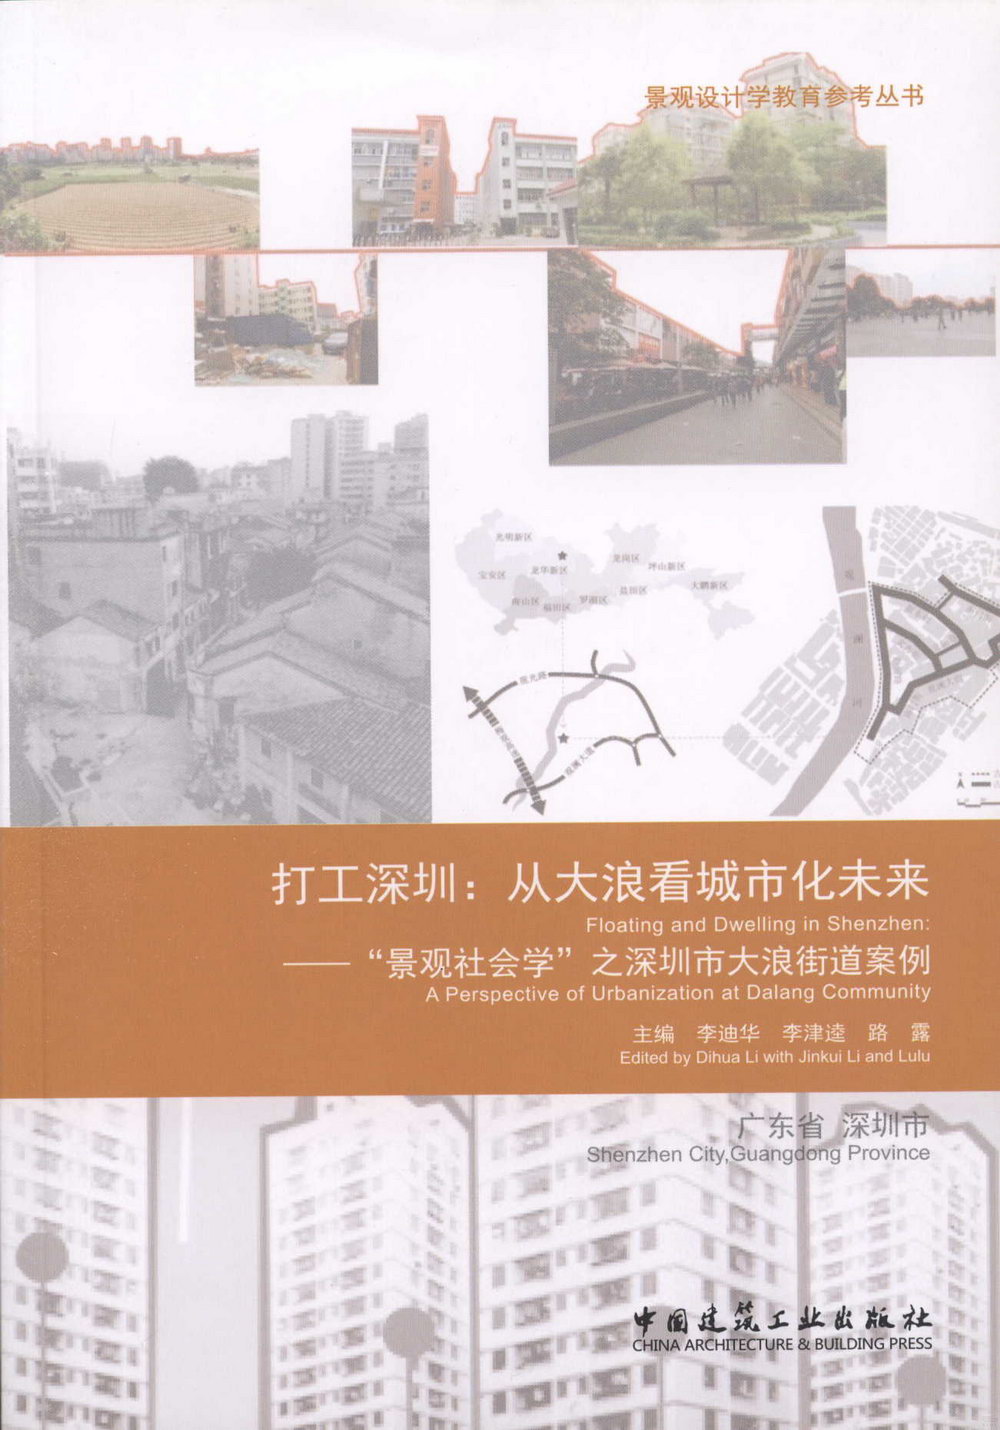 打工深圳：從大浪看城市化未來--「景觀社會學」之深圳市大浪街道案例